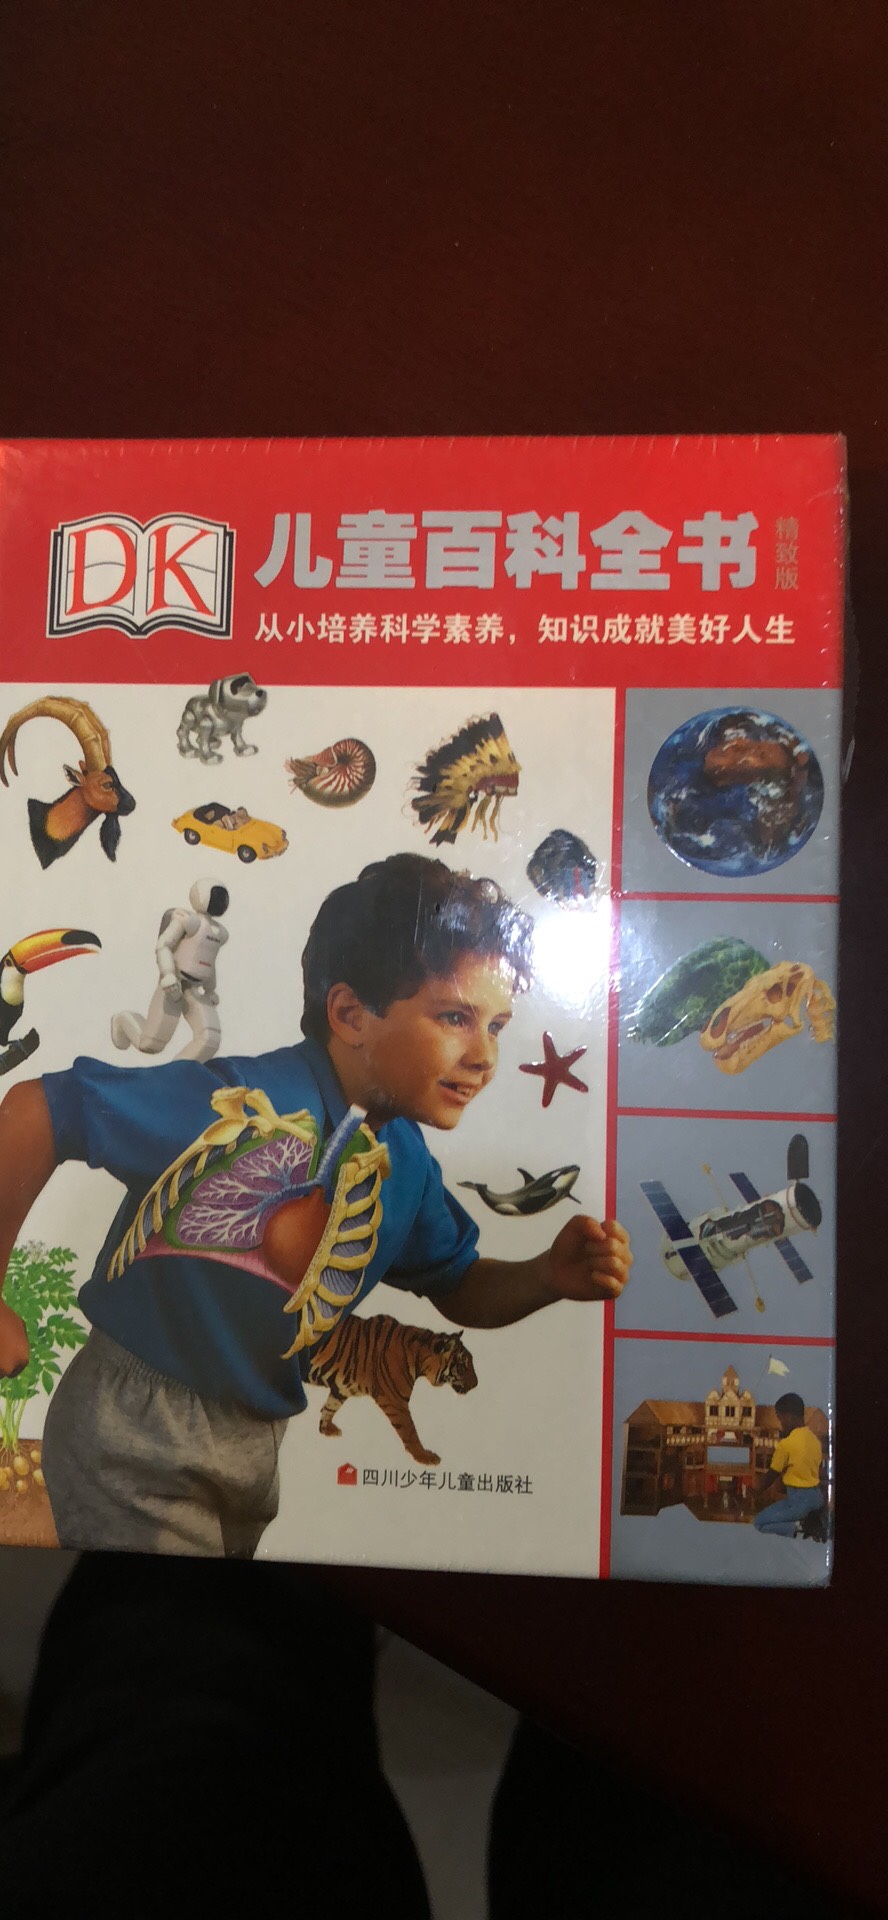 DK的书都很不错，值得购买。孩子还没看，我自己先看一遍，内容不错，适合孩子阅读！推荐！